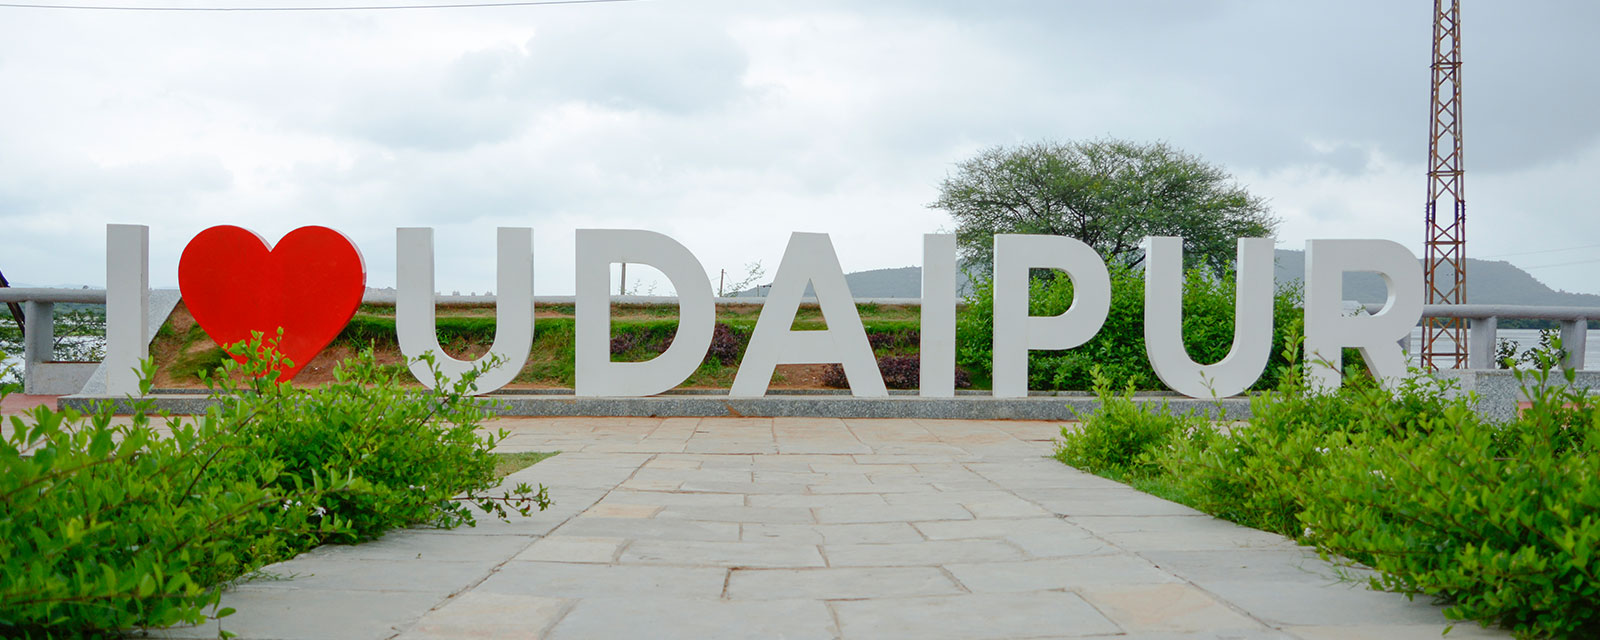 Hotel Association Udaipur